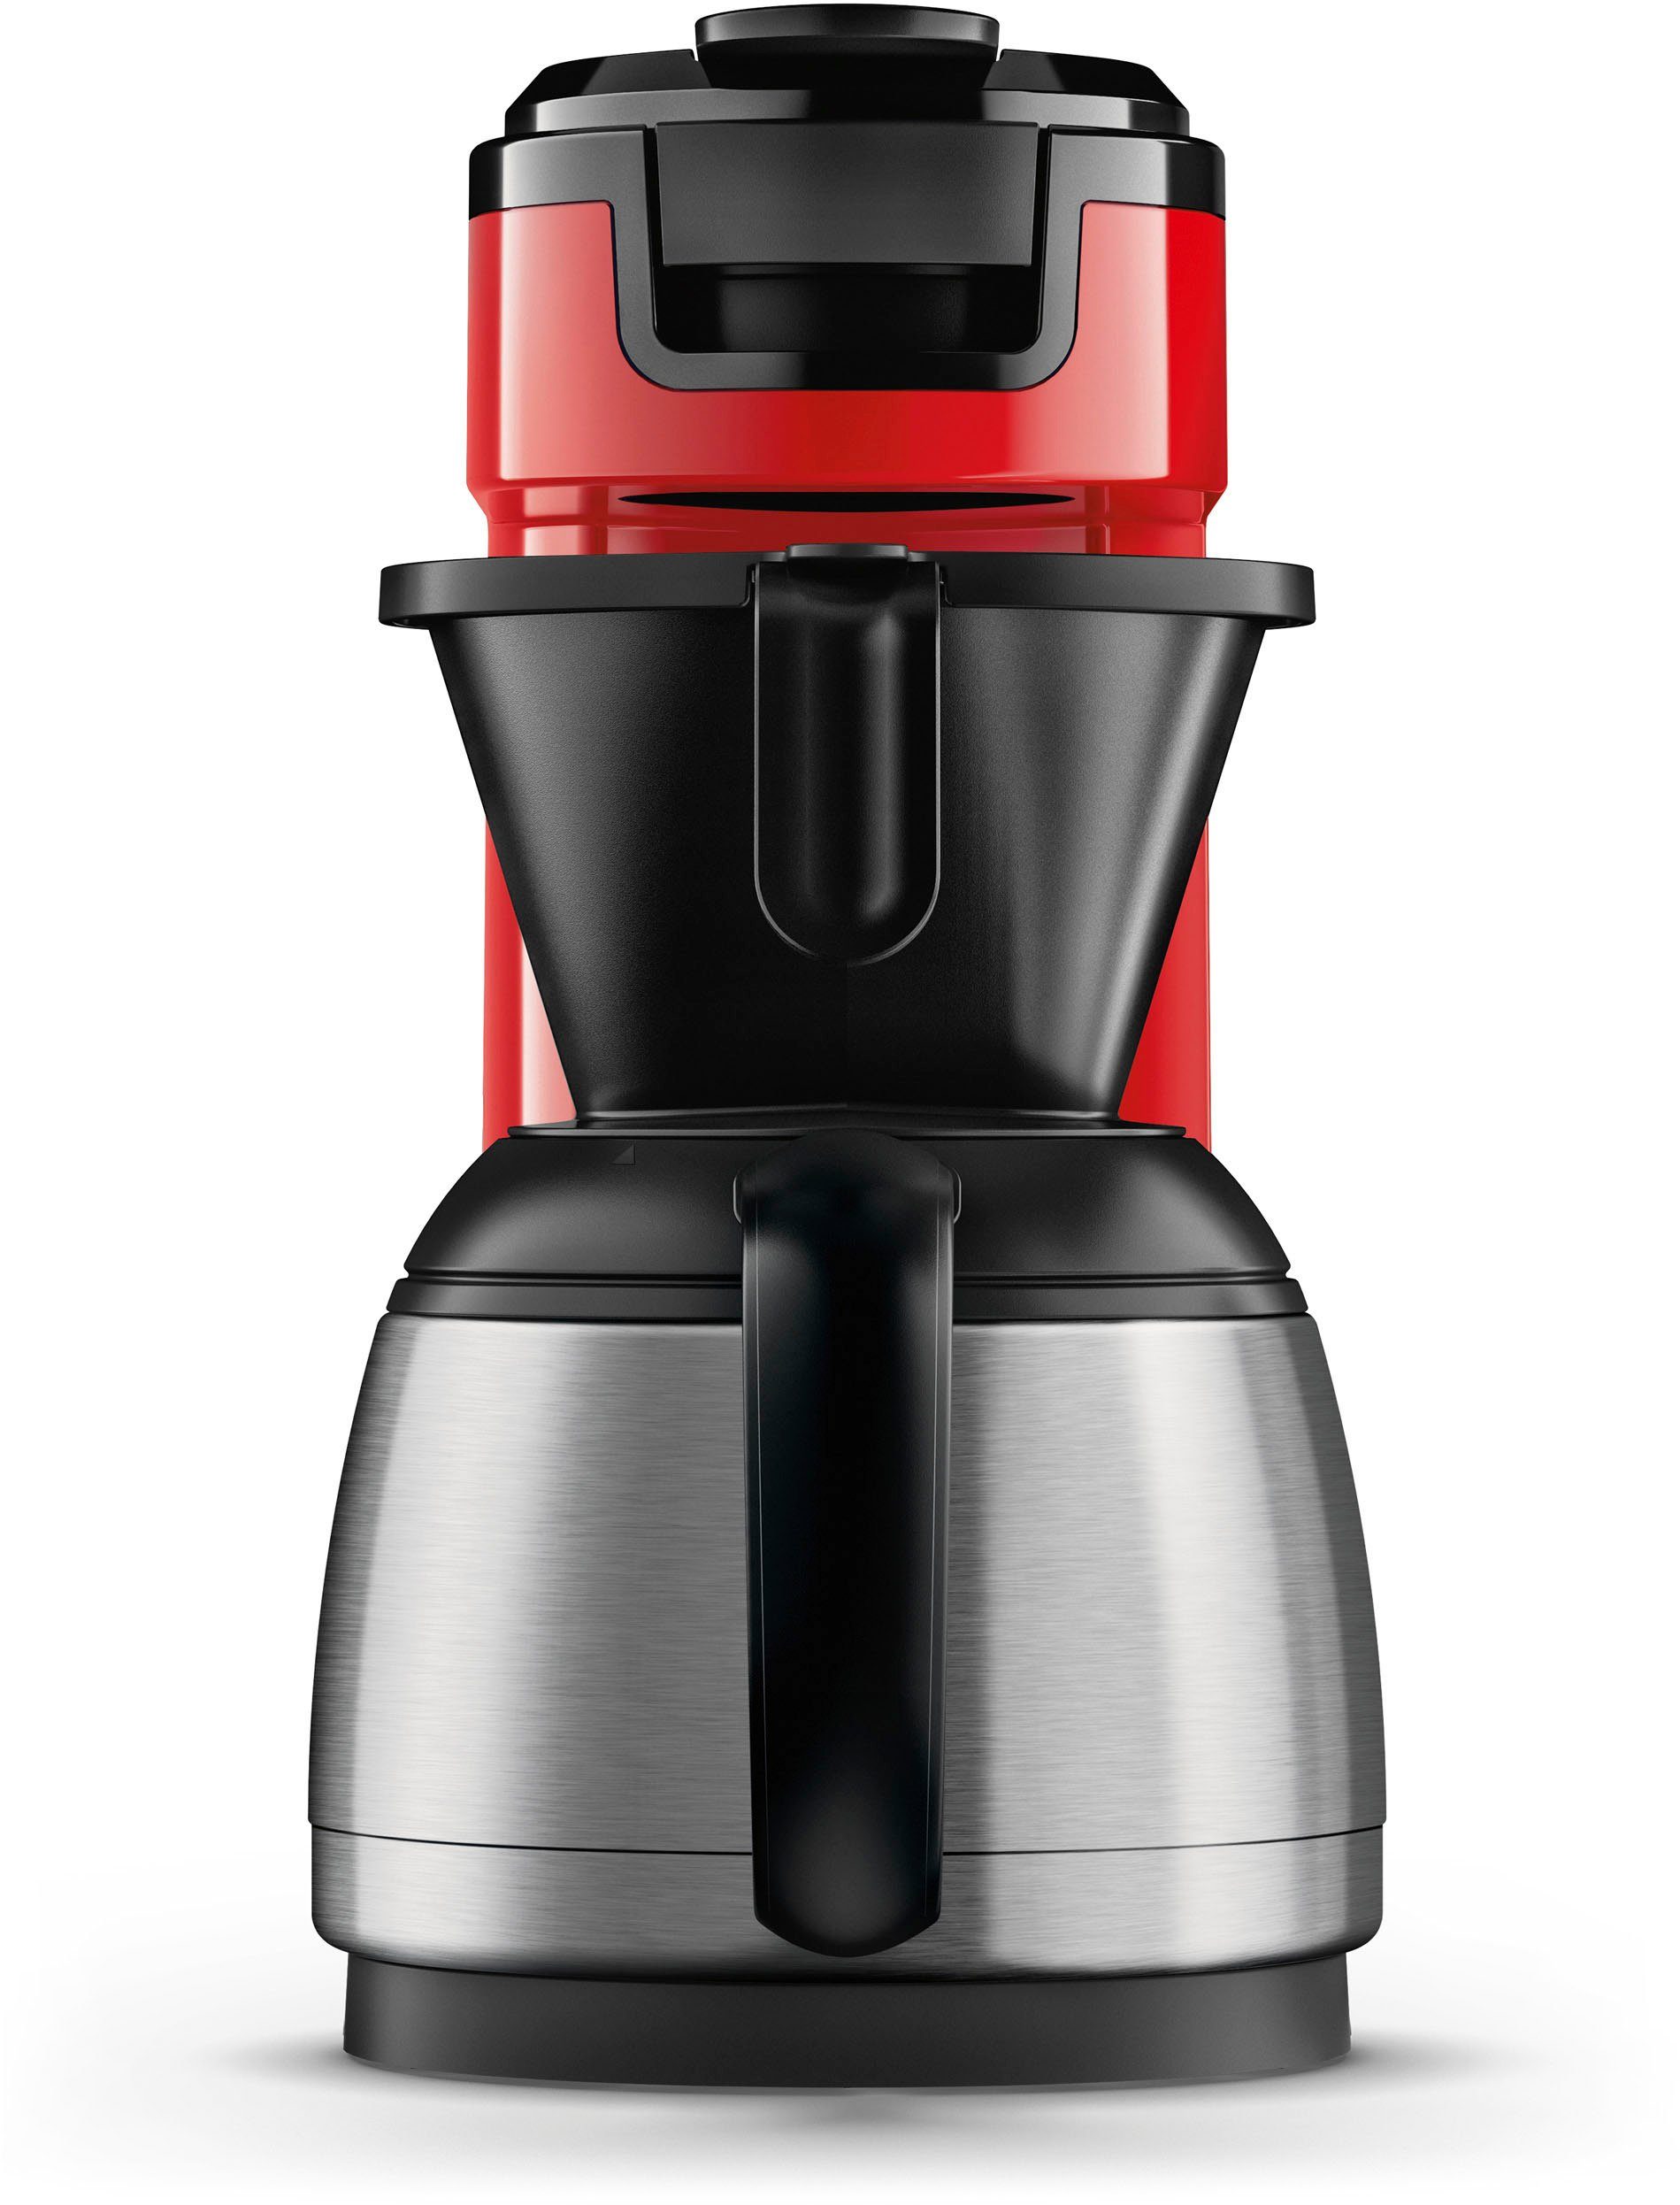 Wert UVP Kaffeepadmaschine 1l € von Philips Senseo Switch Kaffeekanne, Kaffeepaddose 9,90 im inkl. HD6592/84,